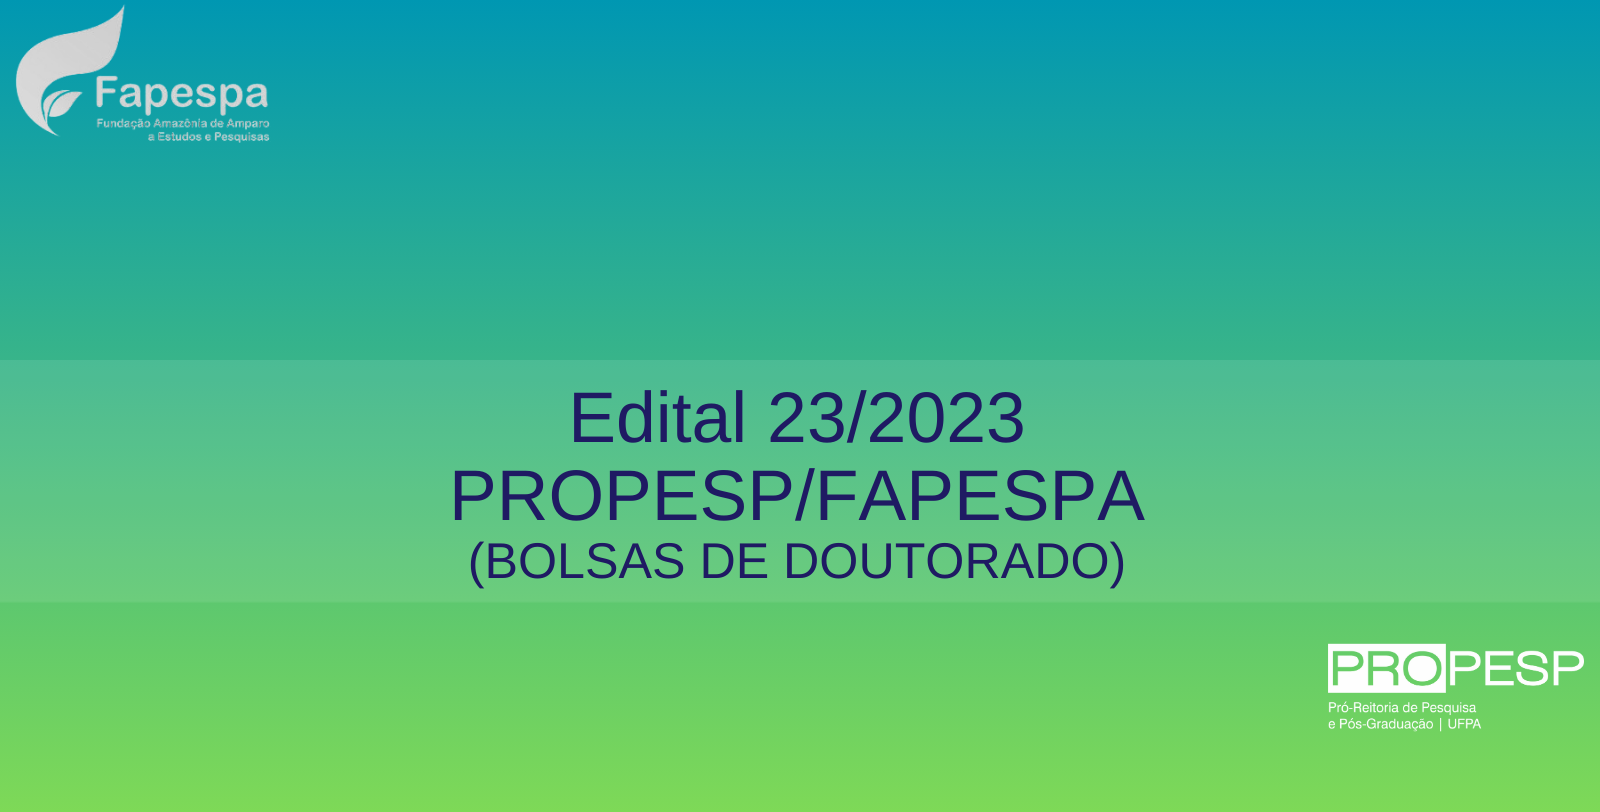 Edital 23/2023 - PROPESP/FAPESPA (Bolsas de Doutorado) - Resultado Final da 2ª Fase